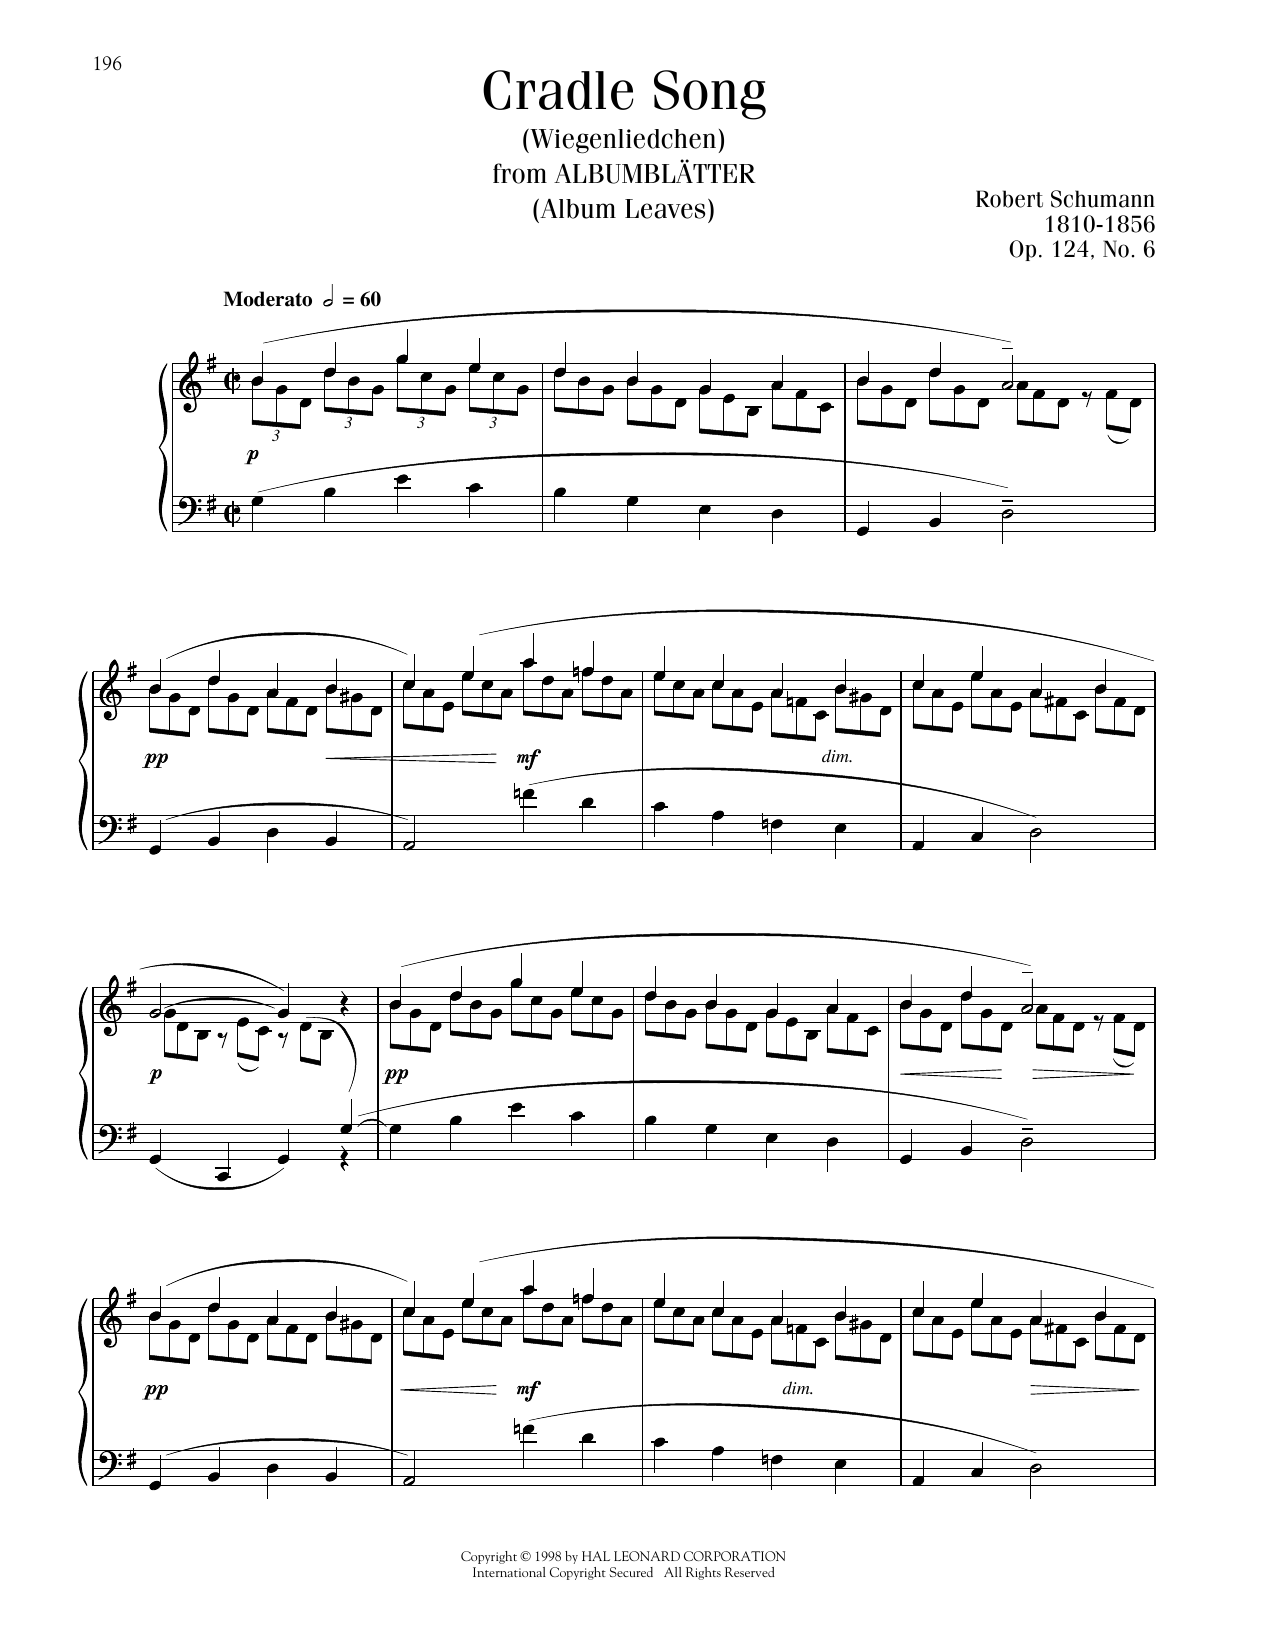 Robert Schumann Little Lullaby, Op. 124, No. 6 sheet music notes printable PDF score